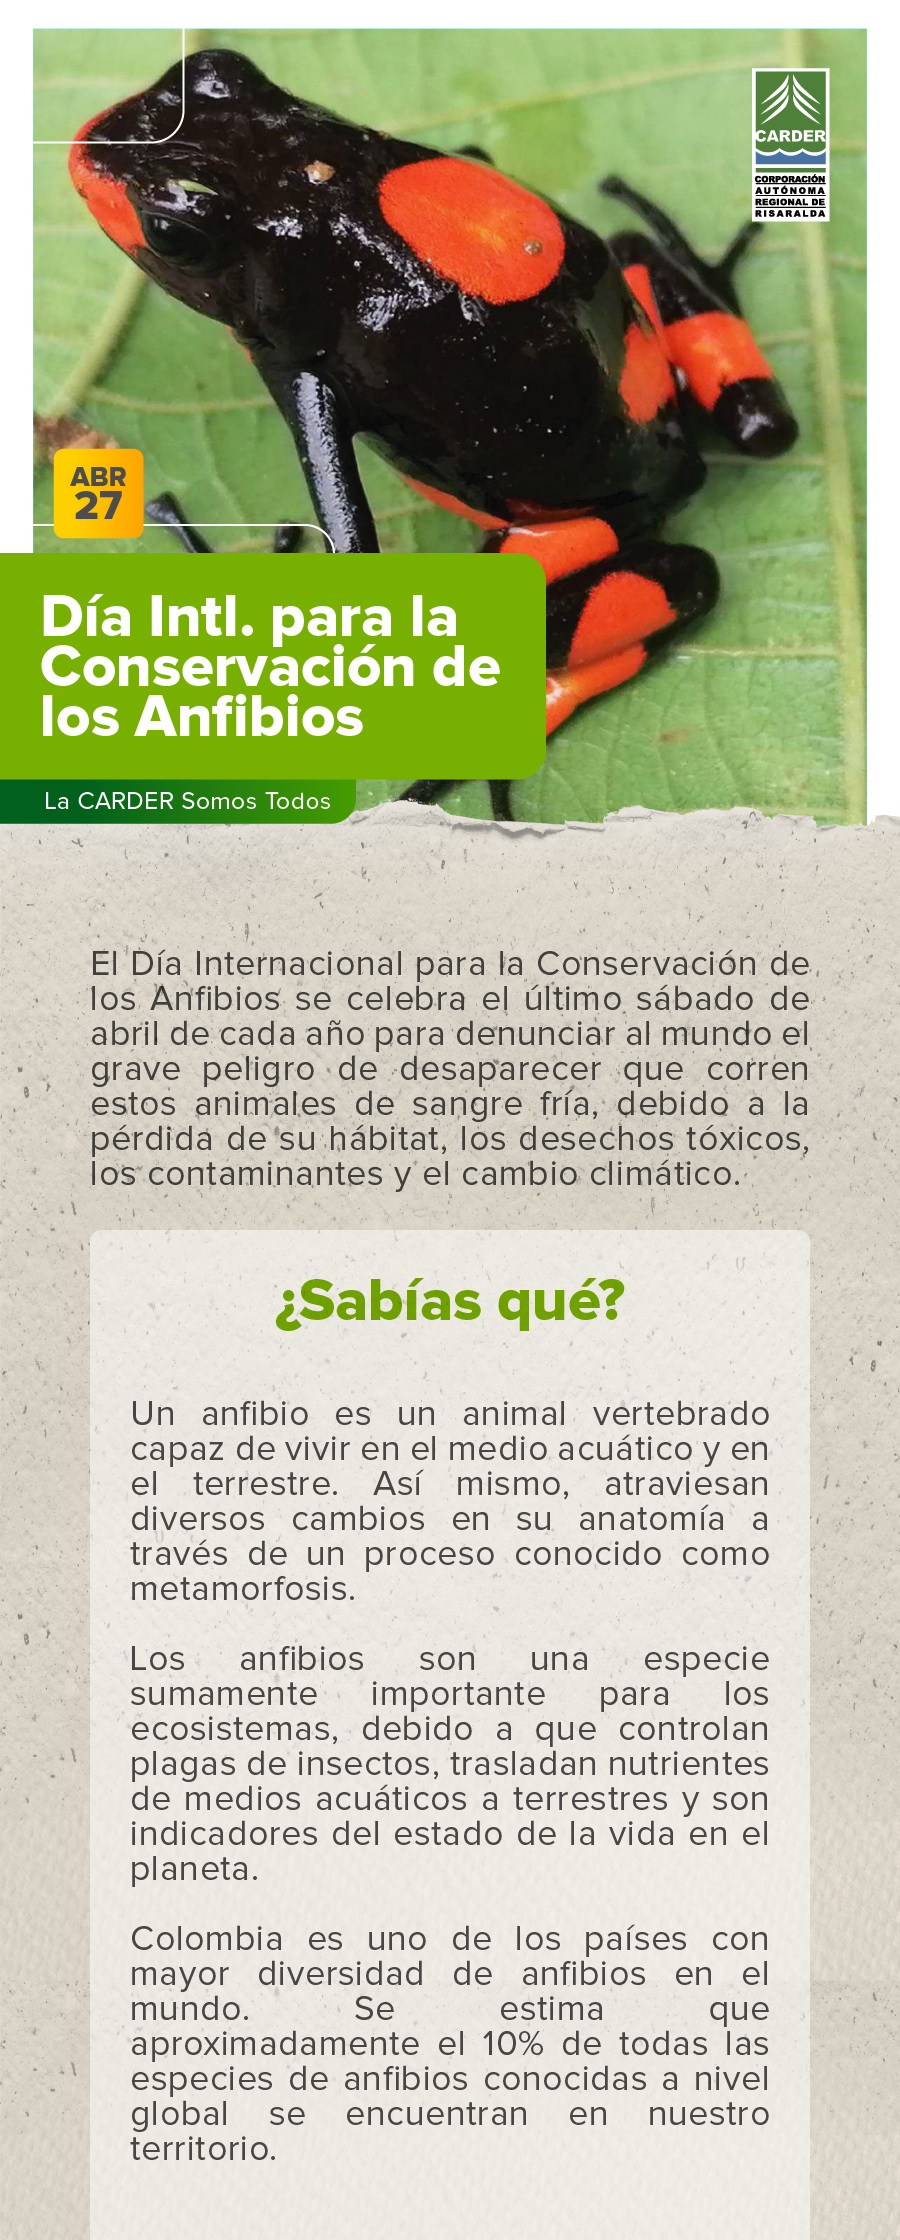 Día Internacional para la Conservación de los Anfibios.